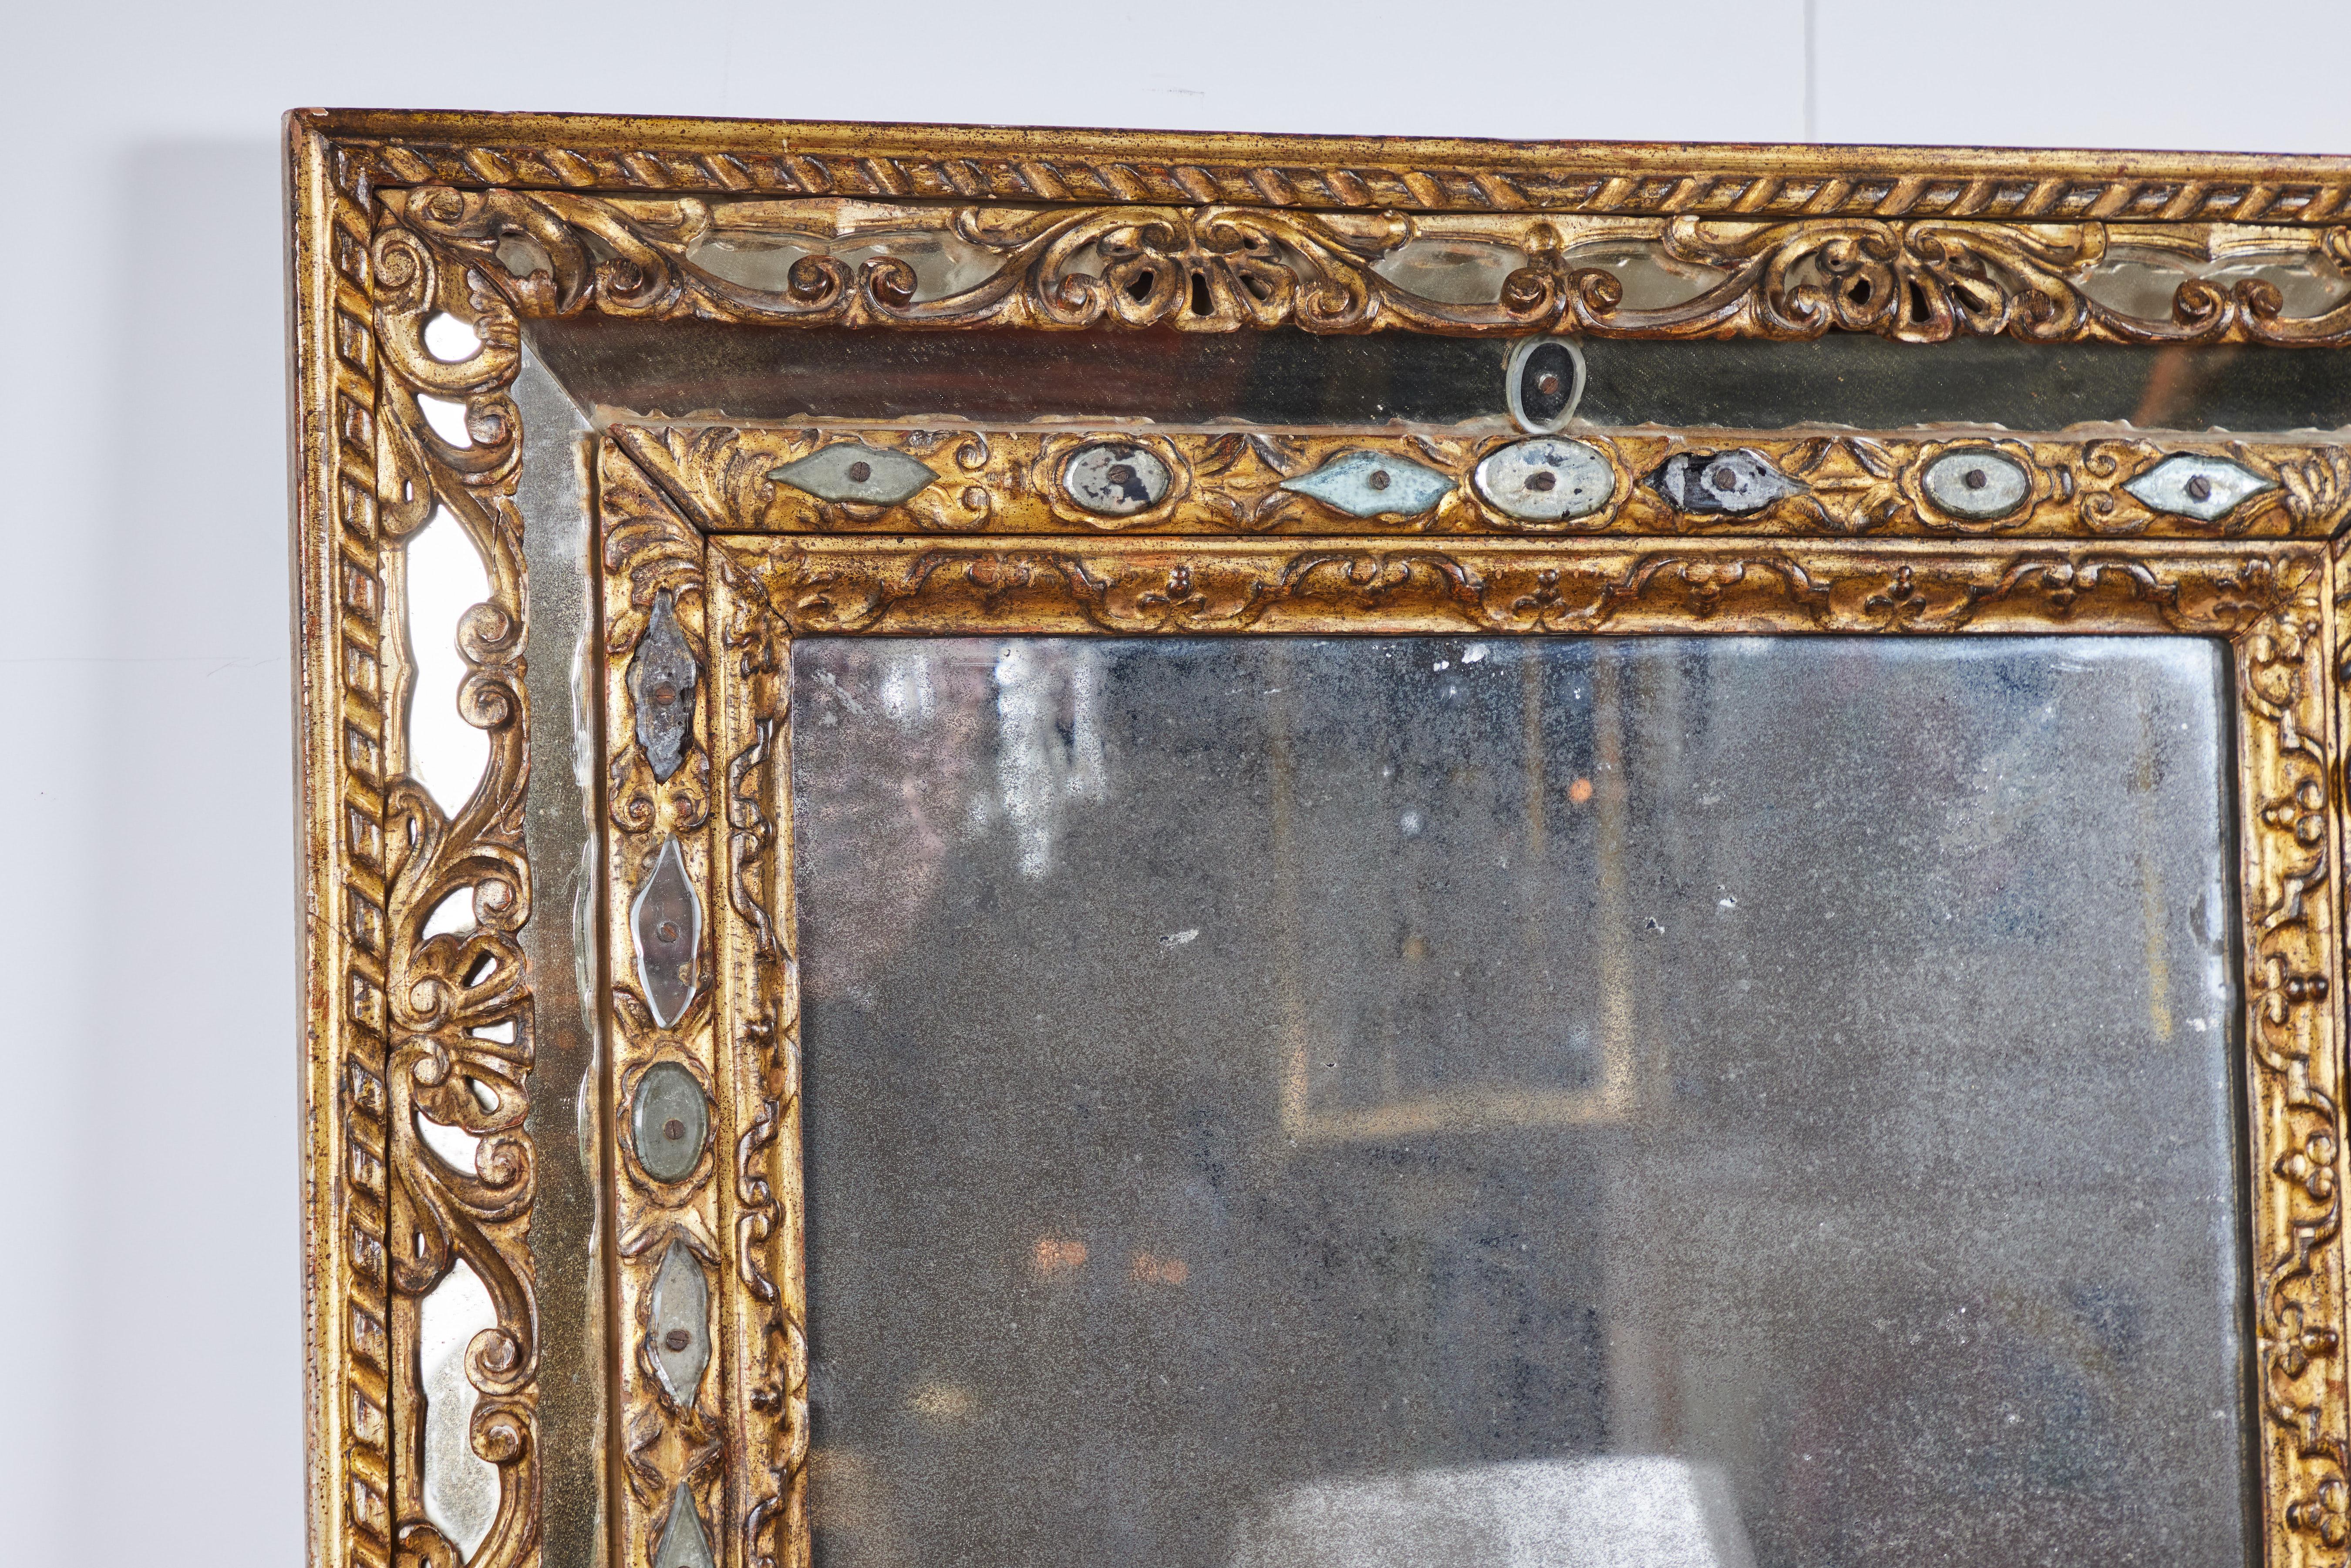 Un élégant miroir en bois doré sculpté avec des accents de miroir coupé.  Verre miroir original en poussière de diamant avec des taches et des pertes.